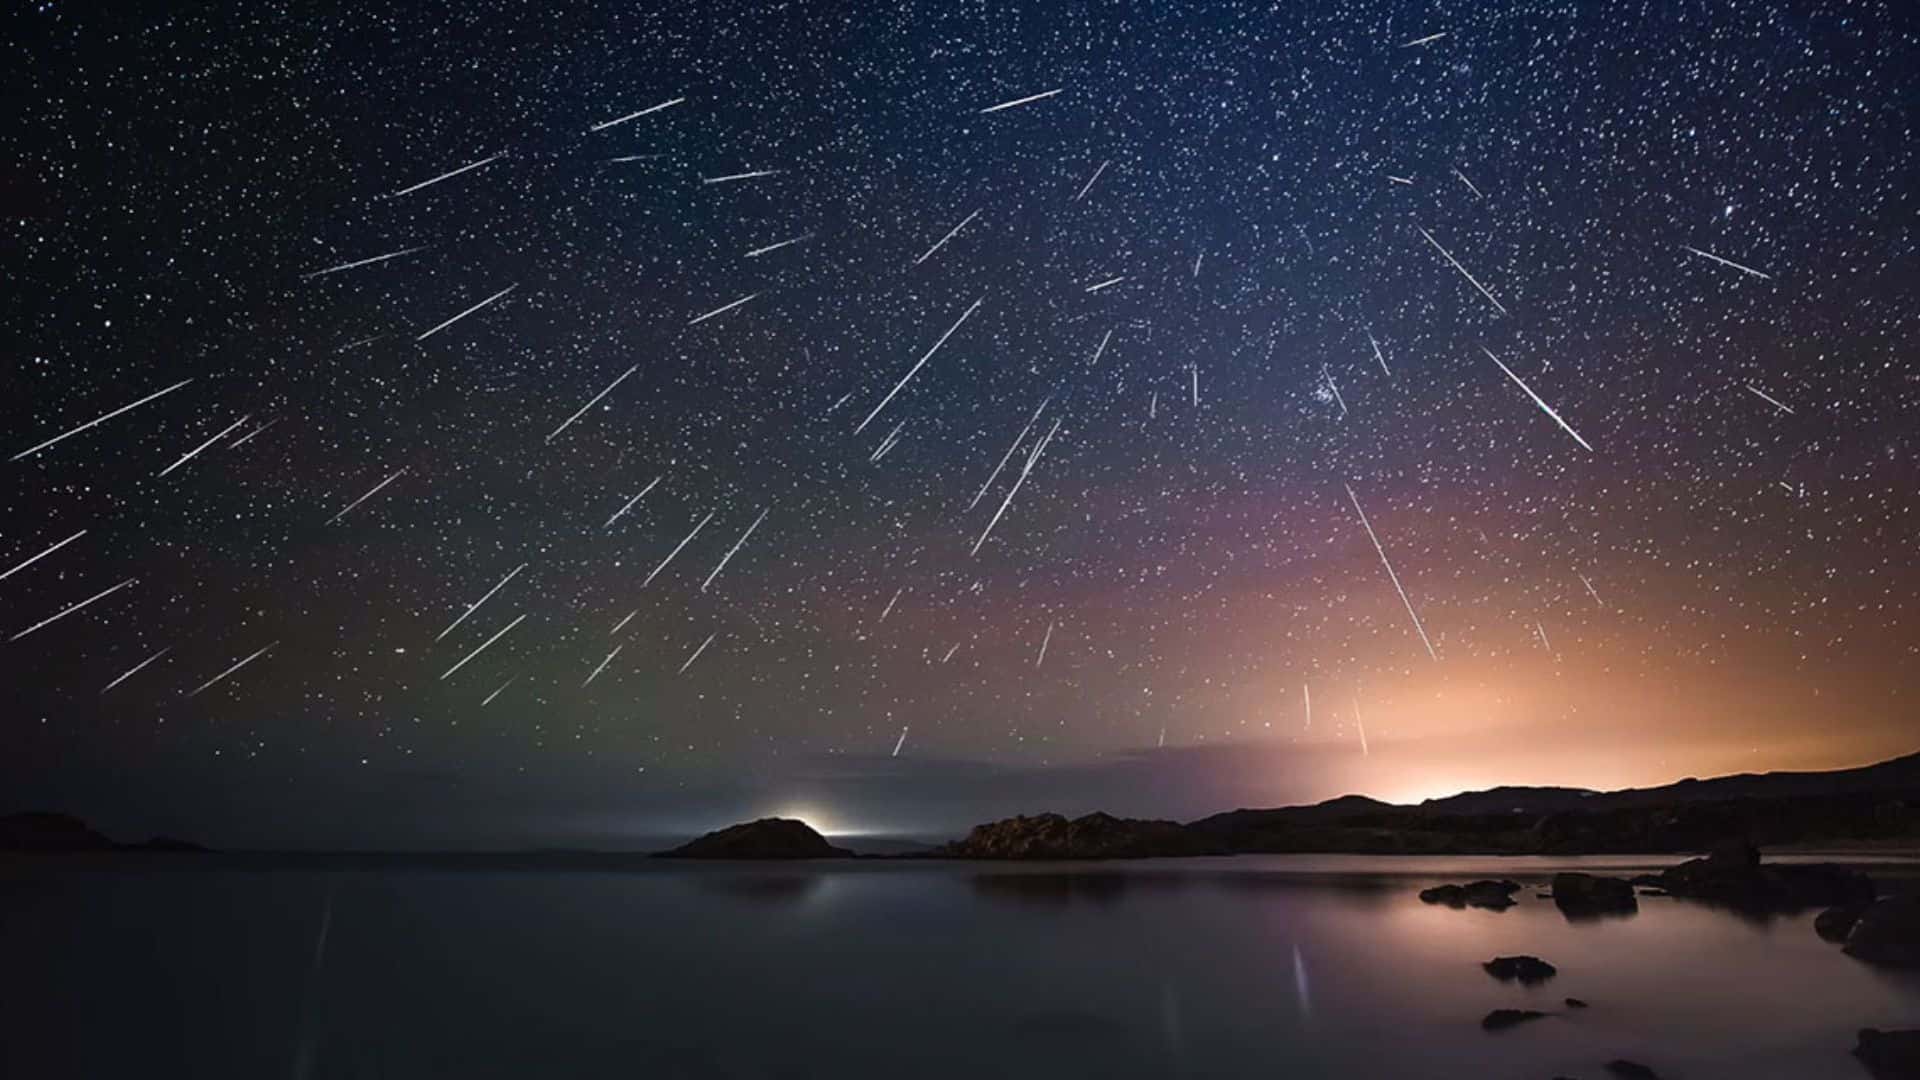 Antoni Cladera captured Geminid meteors on December 14, 2015, in Spain